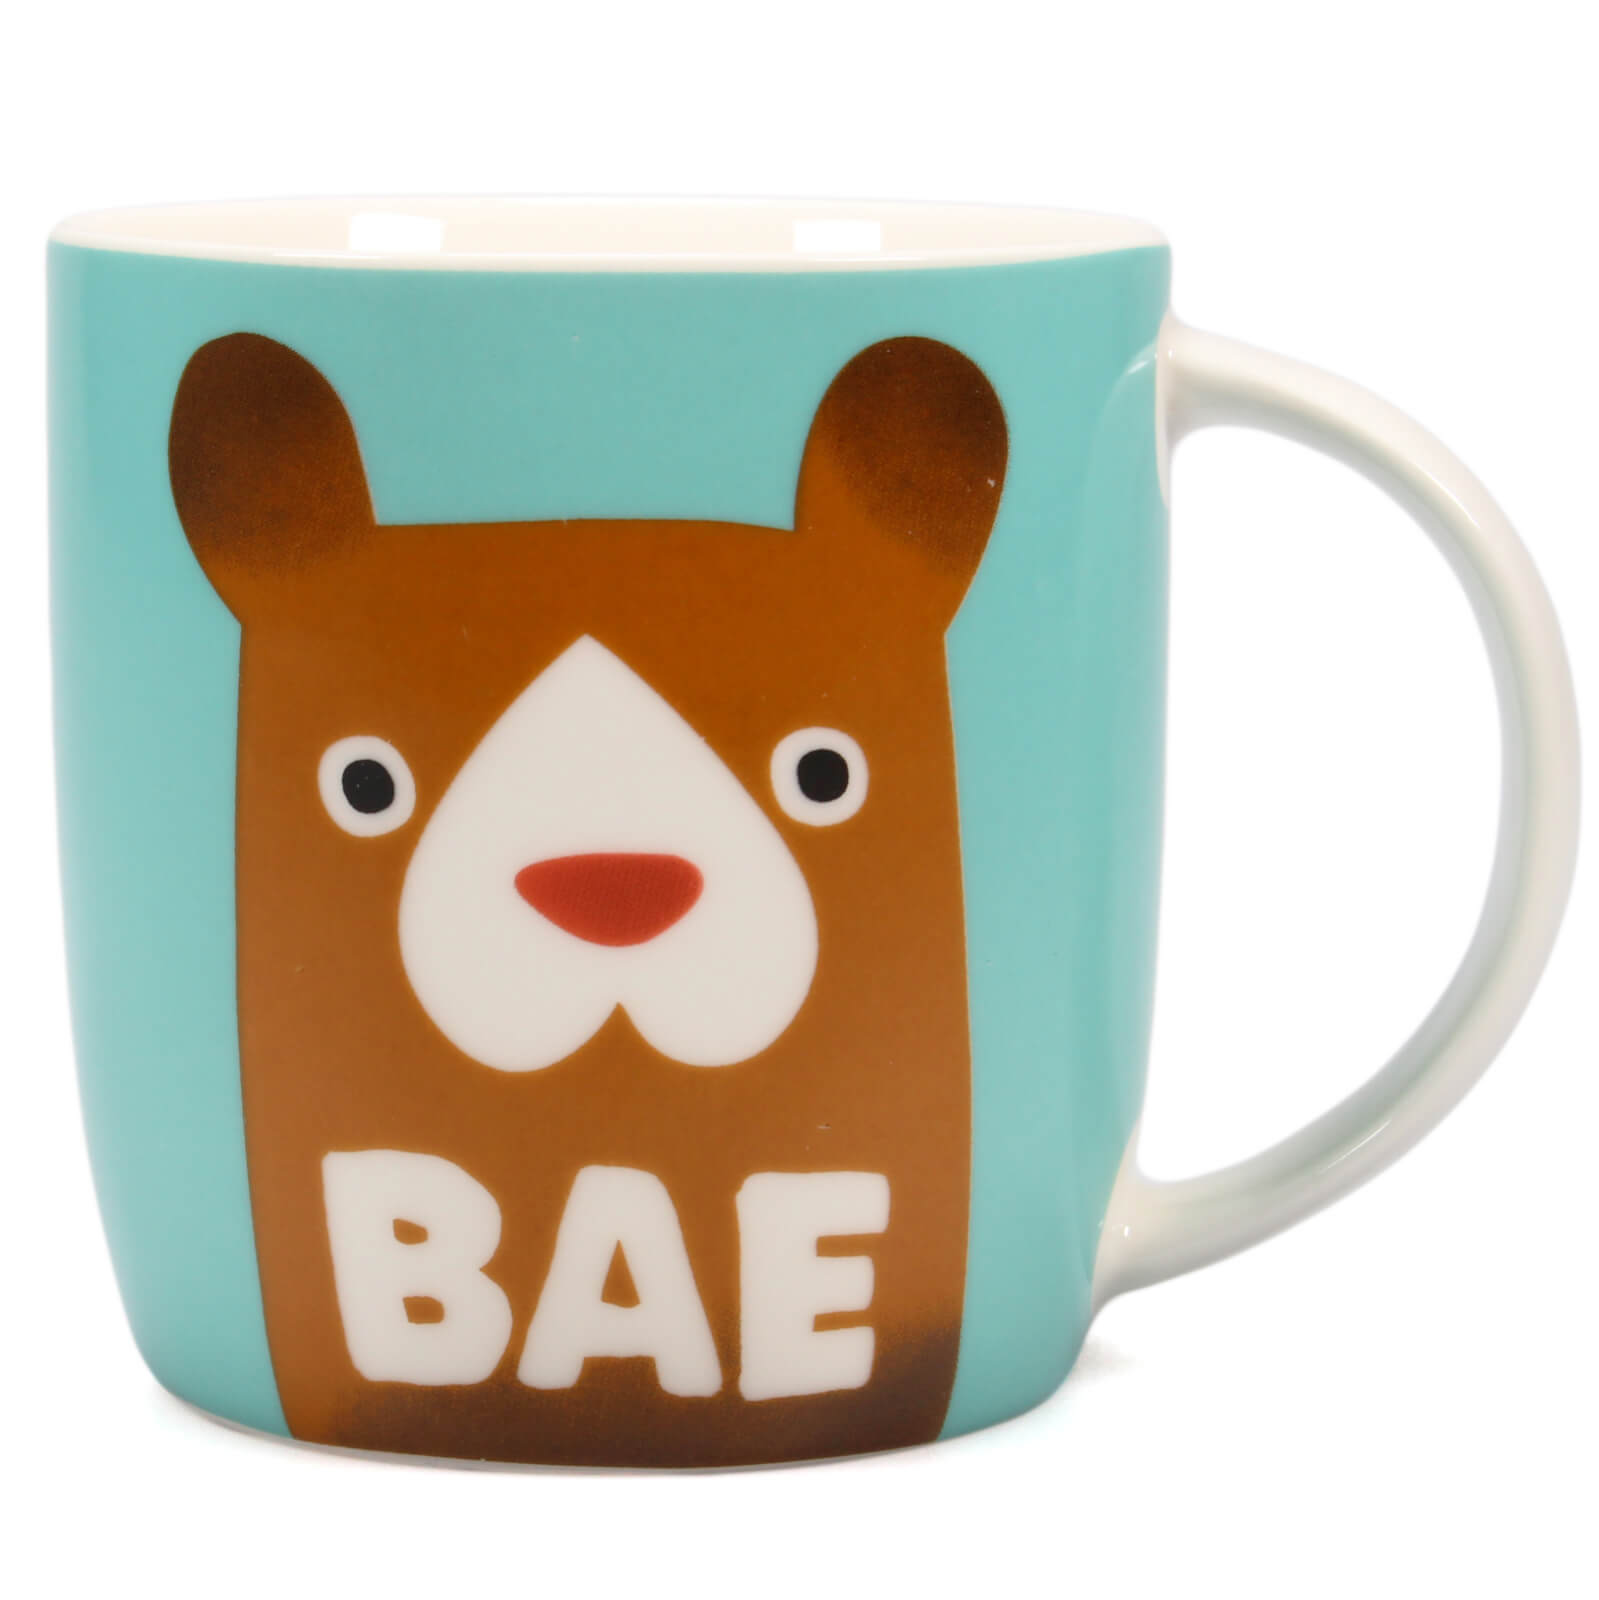 Image of Jolly Awesome BAE Mug